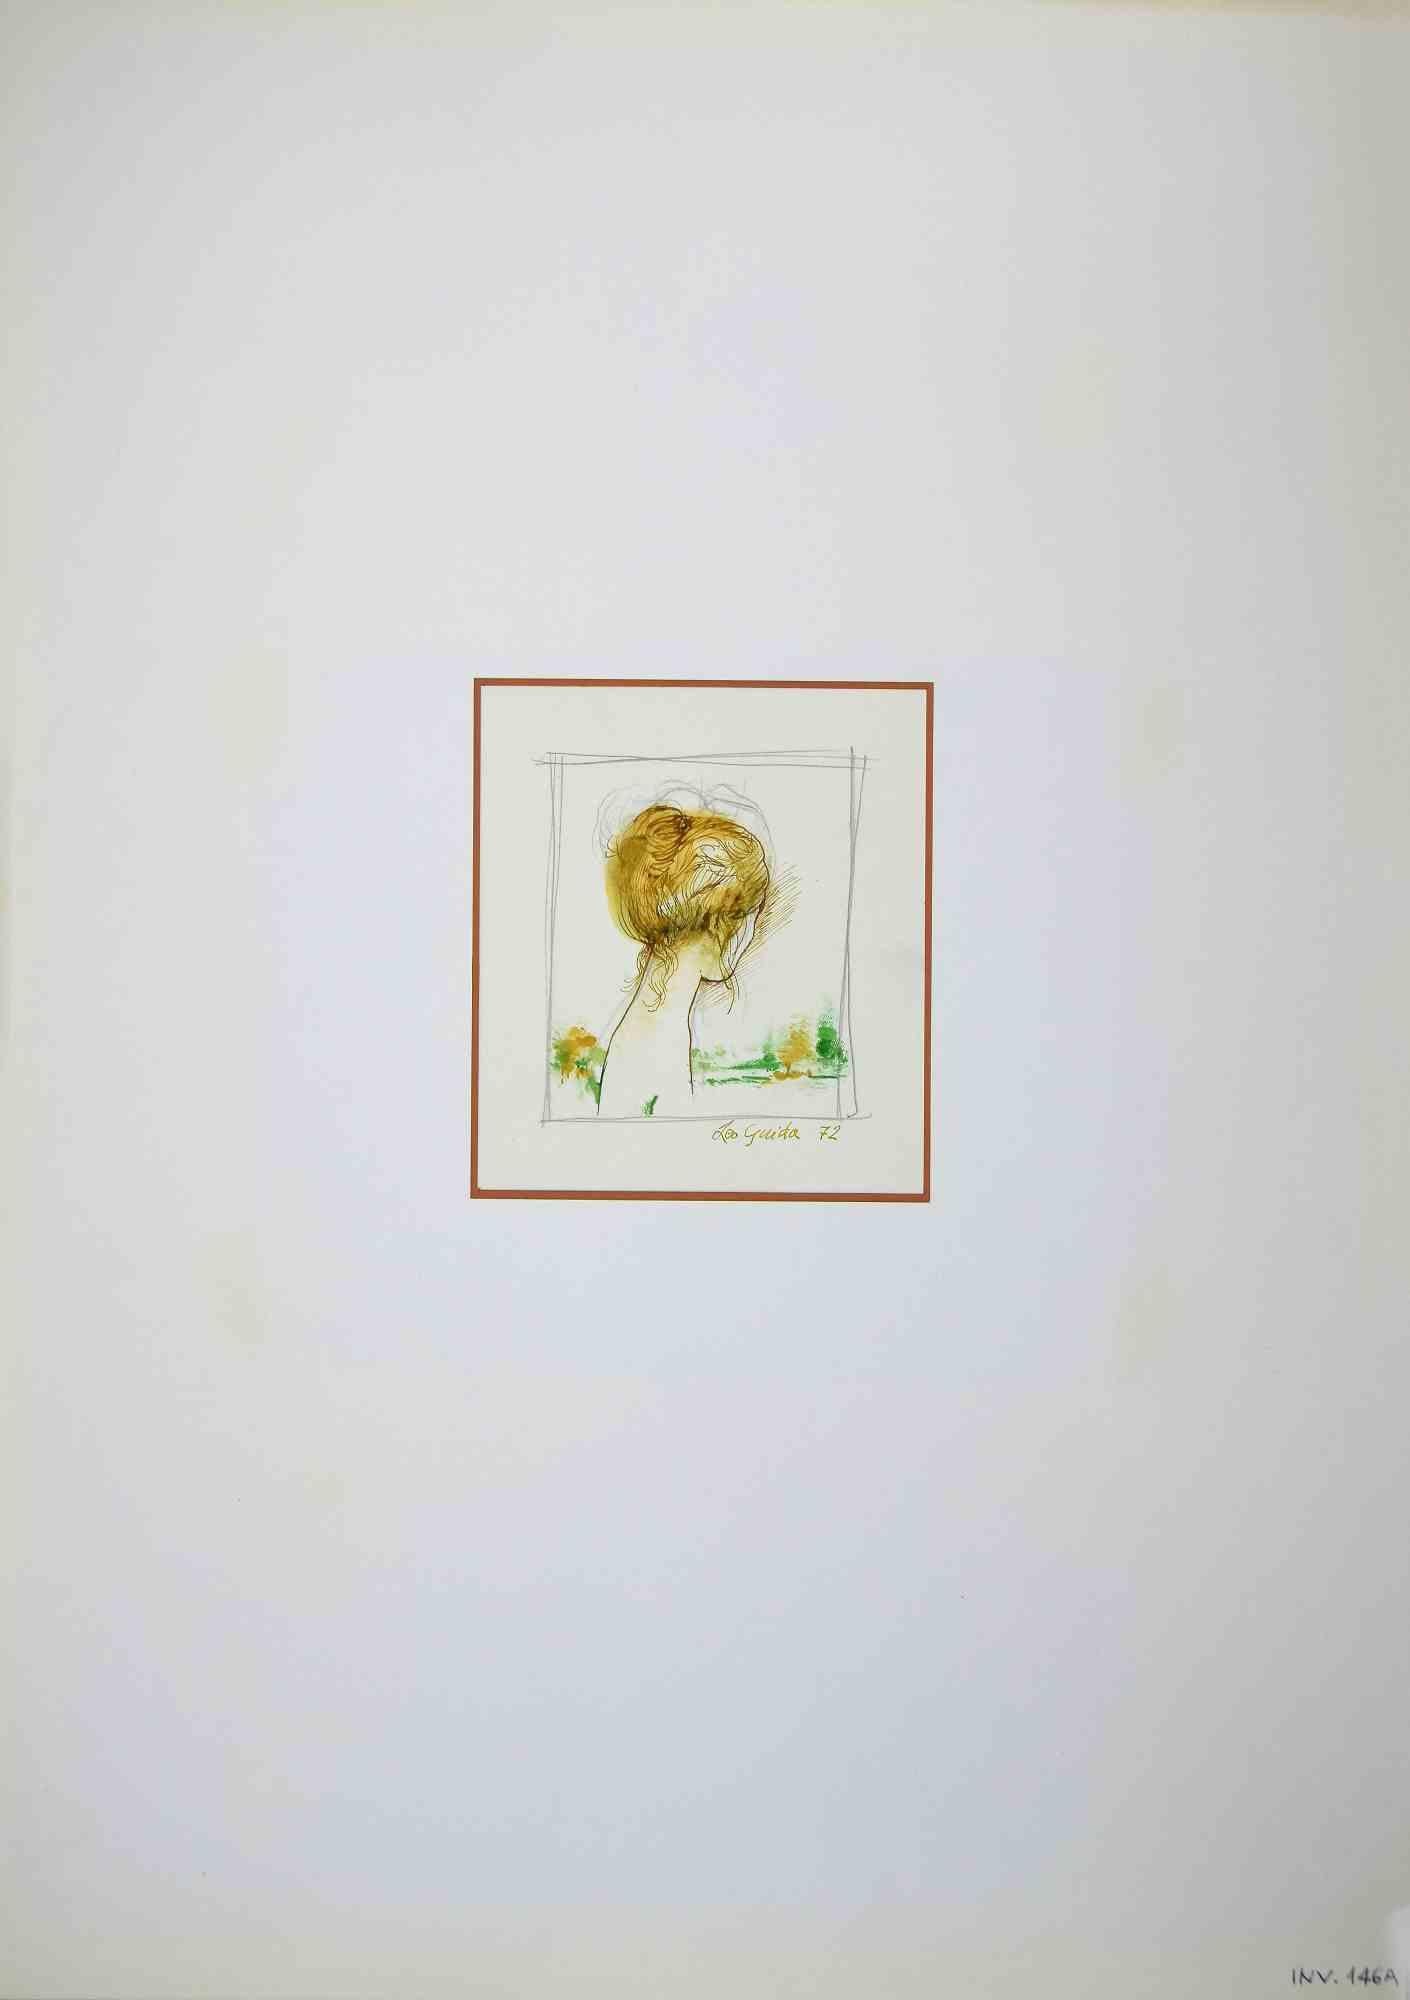 Porträt von hinten ist eine Originalzeichnung in Tusche und Aquarell von Leo Guida aus dem Jahr 1972.

Guter Zustand.

Handsigniert.

Leo Guida  (1992 - 2017). Mit seinem Gespür für aktuelle Themen, künstlerische Strömungen und historische Techniken